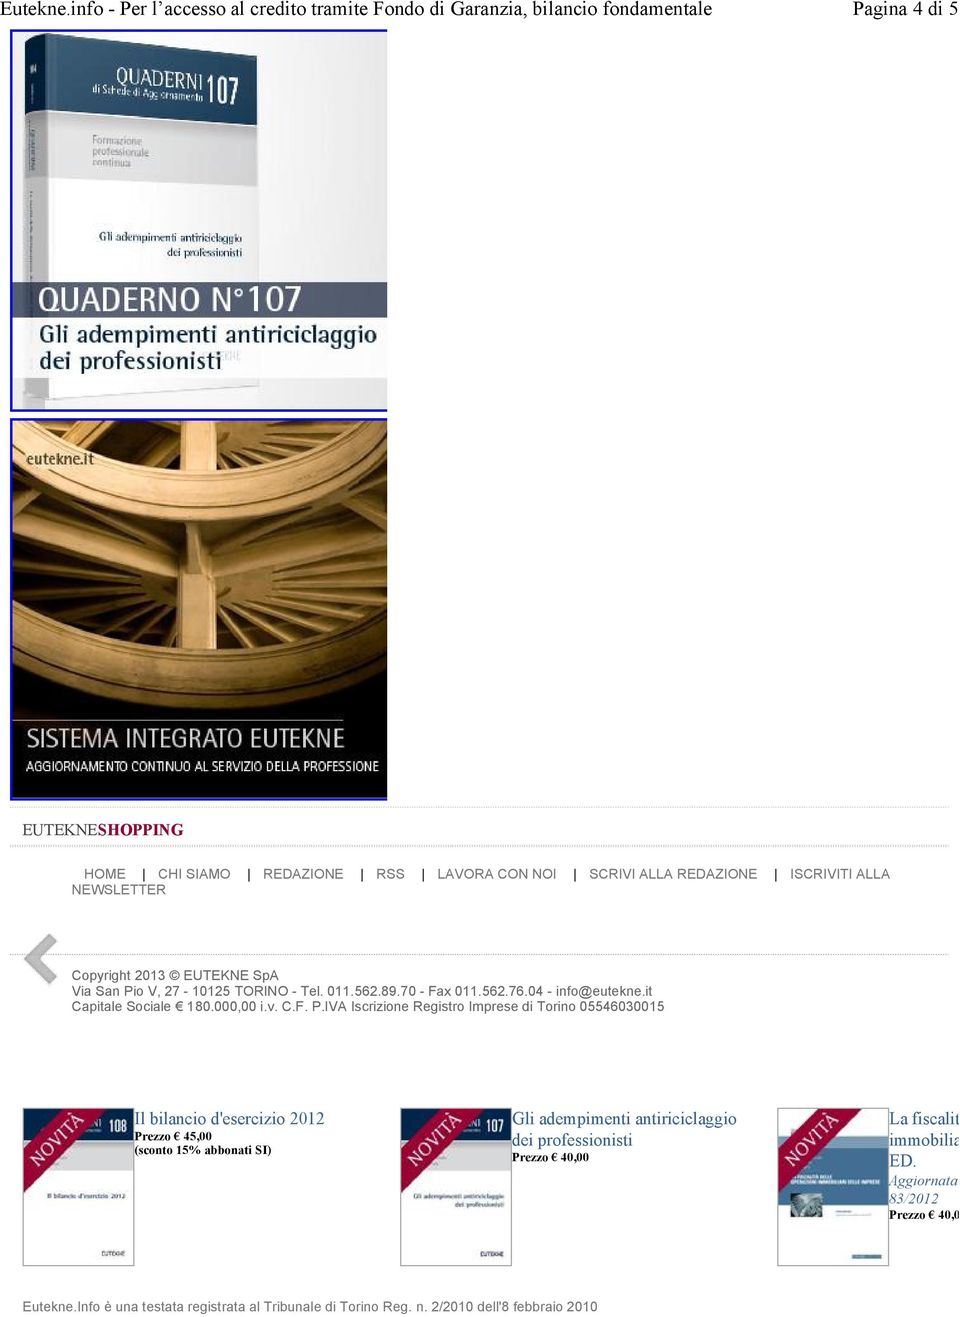 IVA Iscrizione Registro Imprese di Torino 05546030015 Il bilancio d'esercizio 2012 Prezzo 45,00 (sconto 15% abbonati SI) Gli adempimenti antiriciclaggio dei